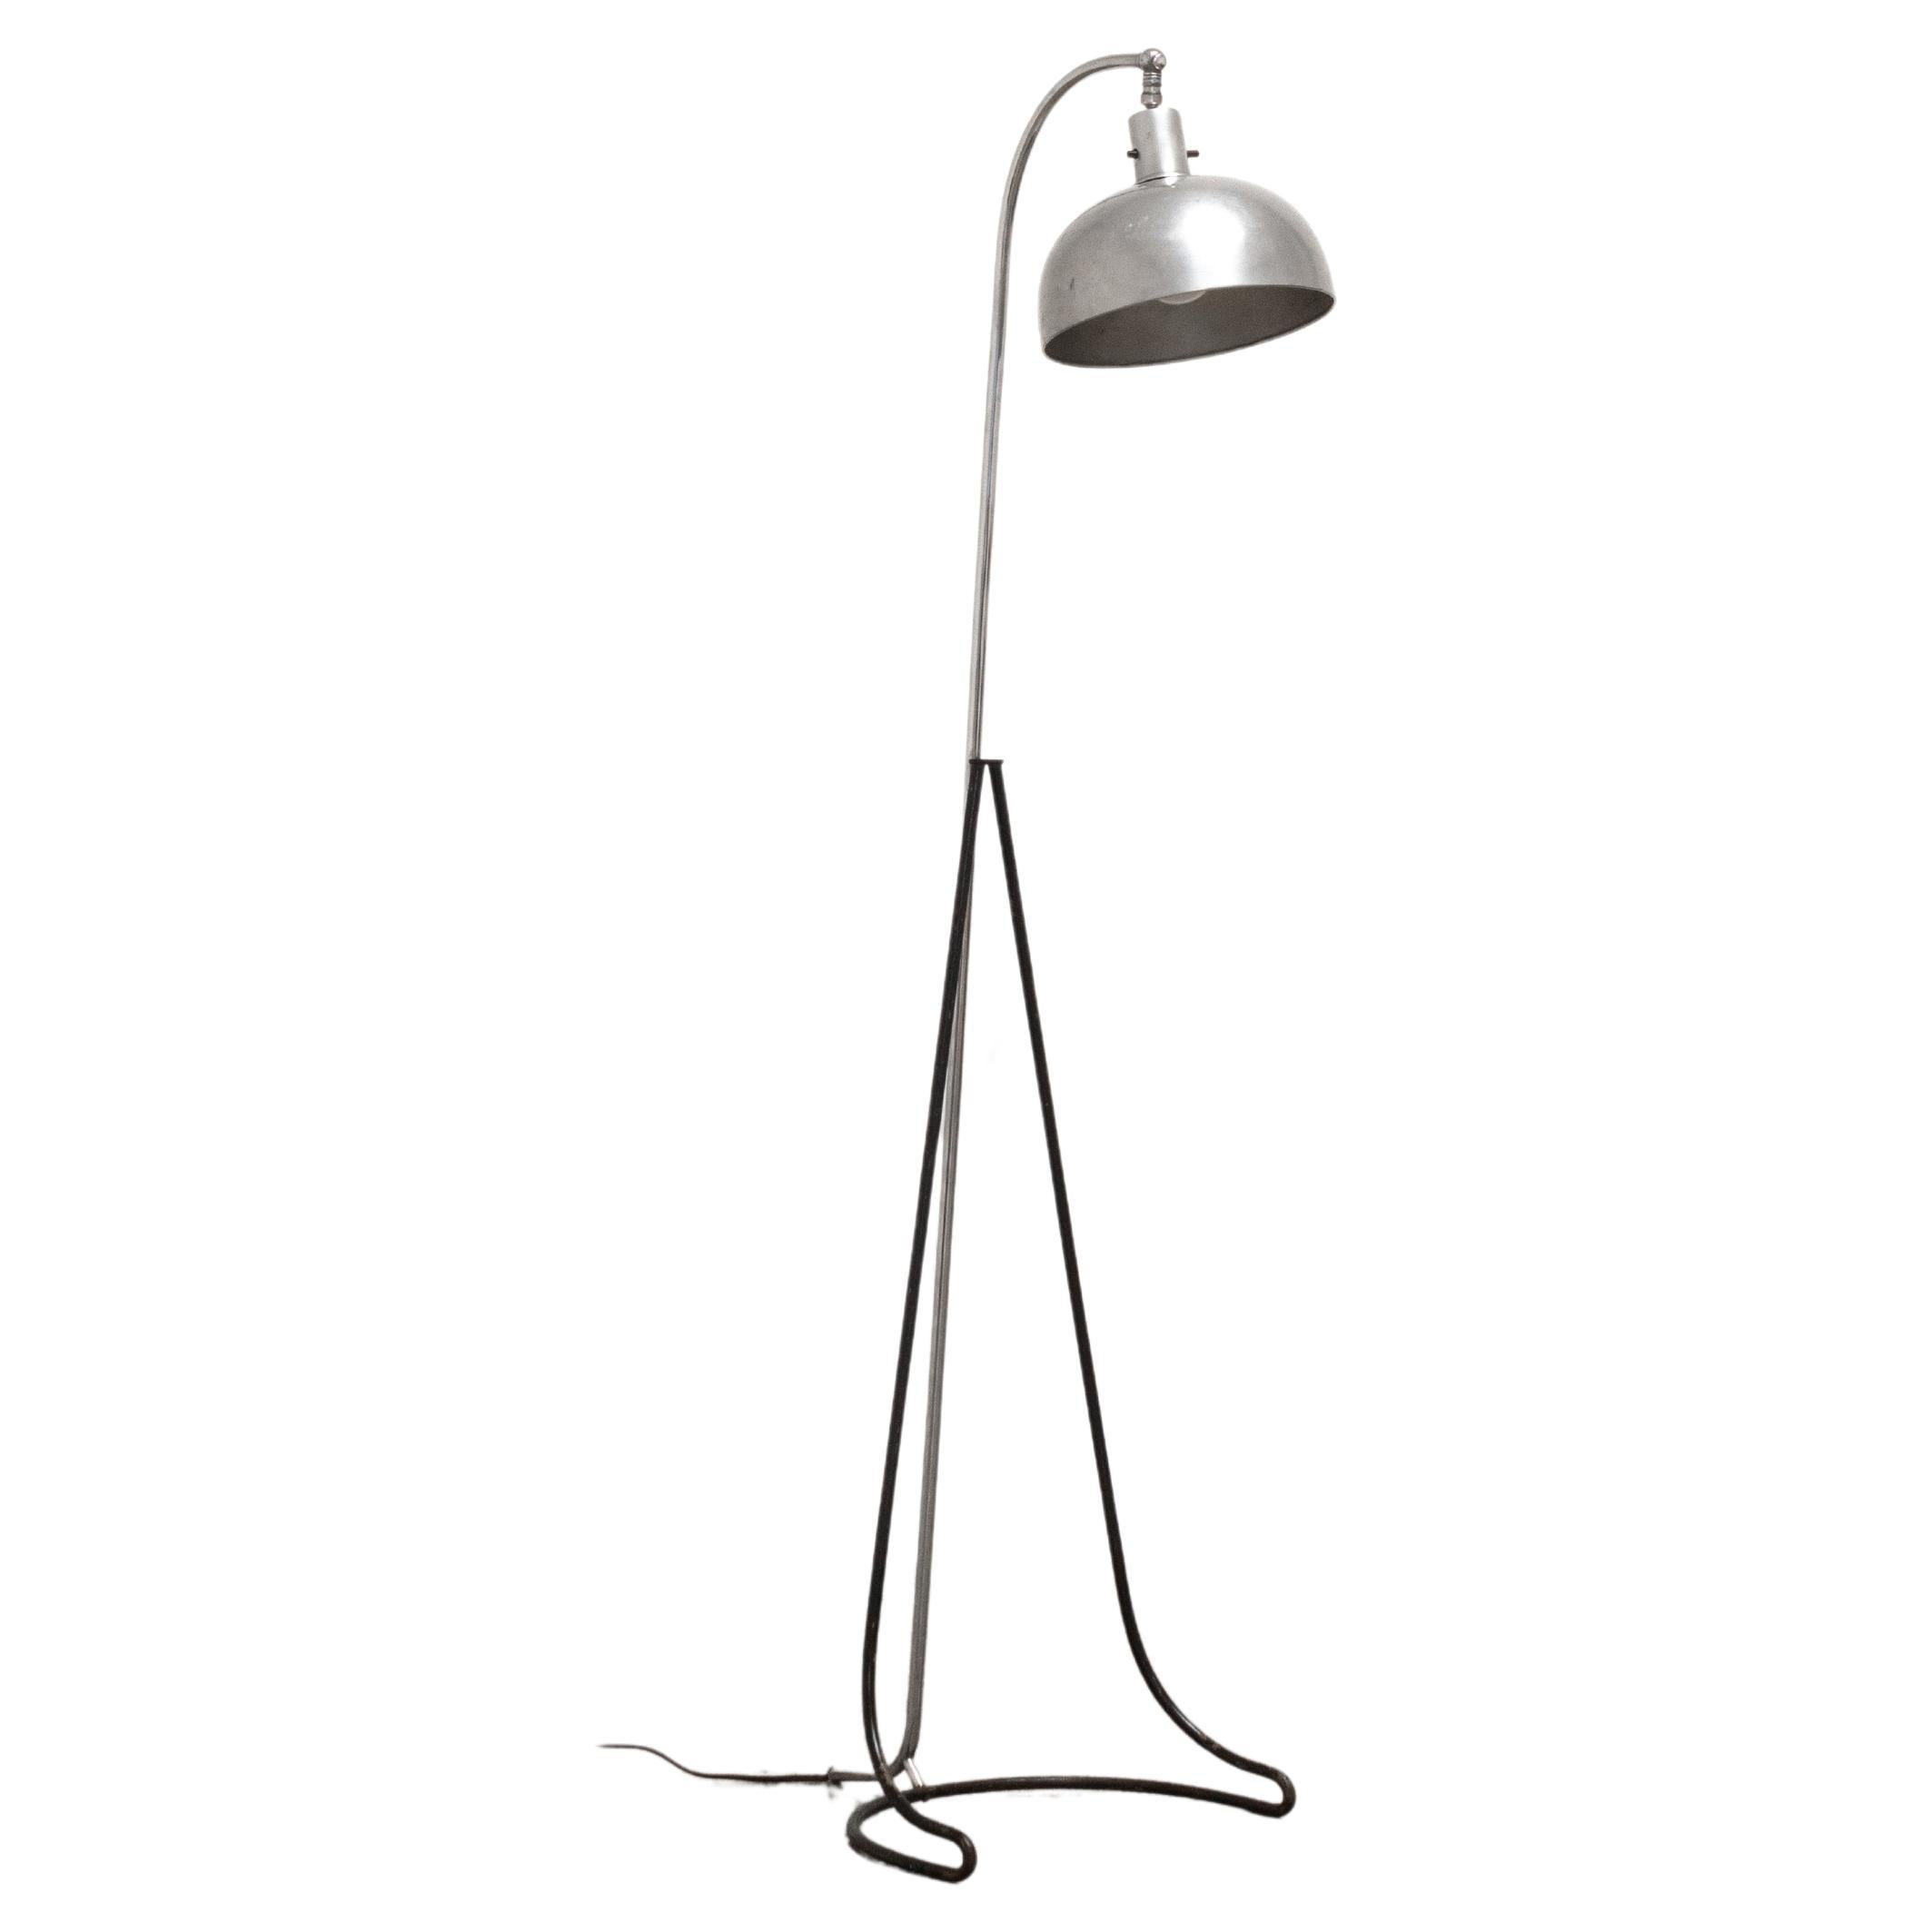 Gilbert Rohde, floor lamp